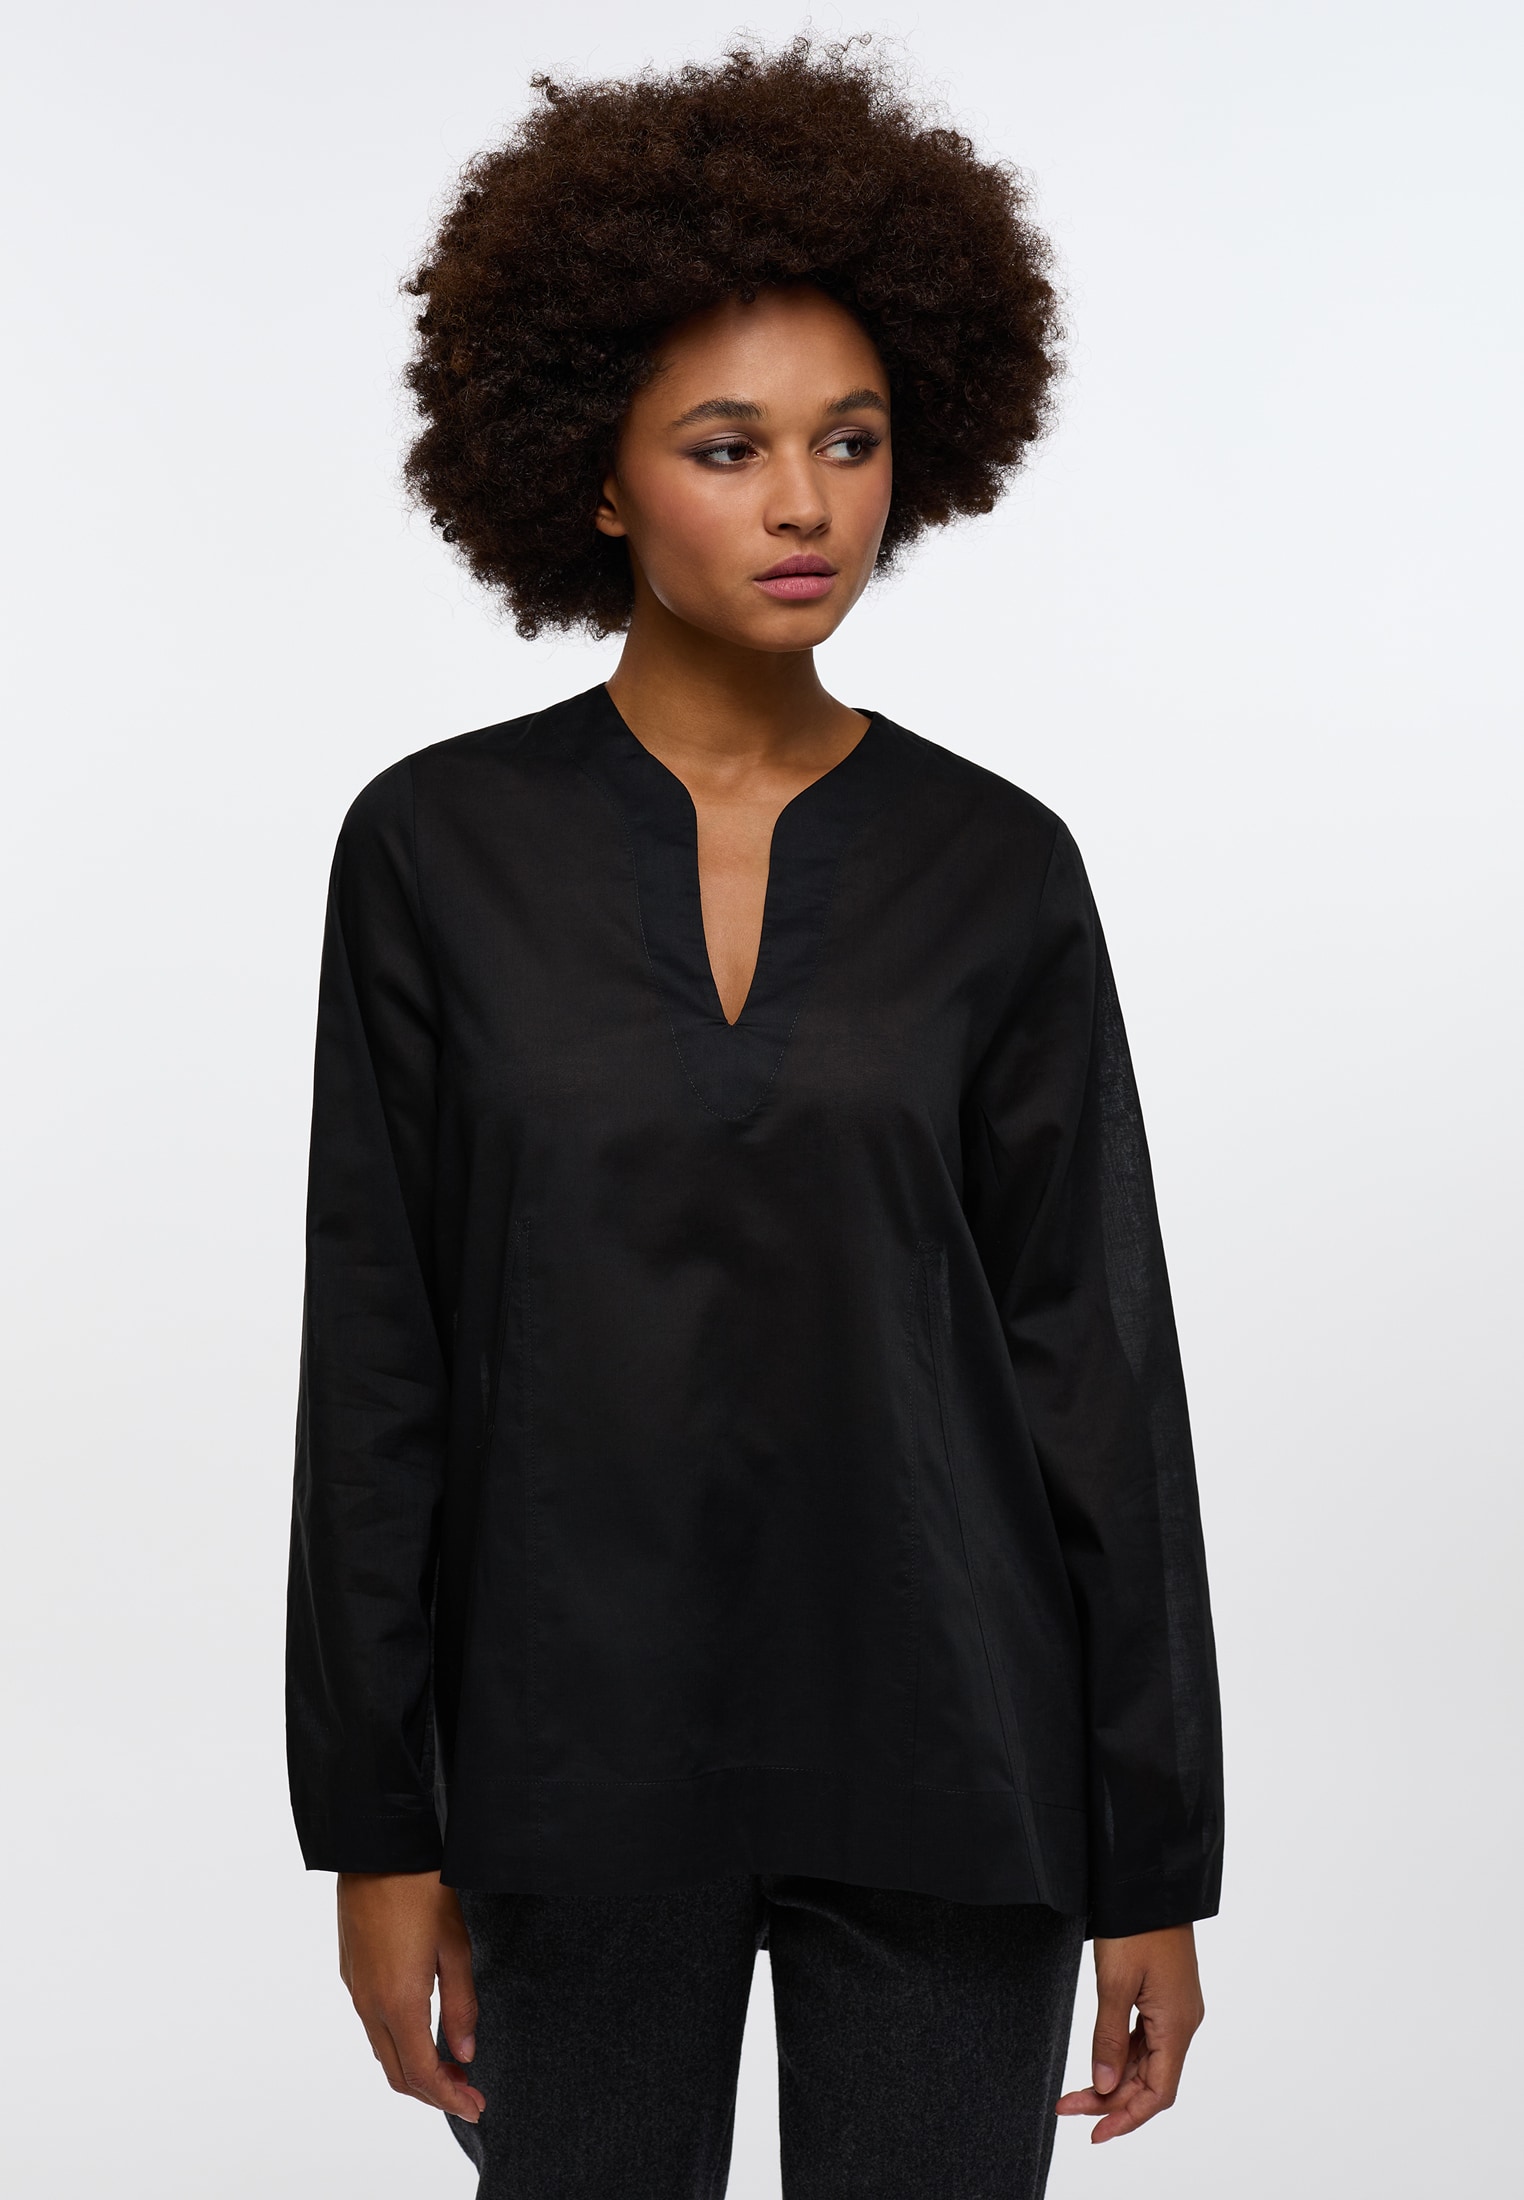 Blusen für Damen online kaufen | ETERNA